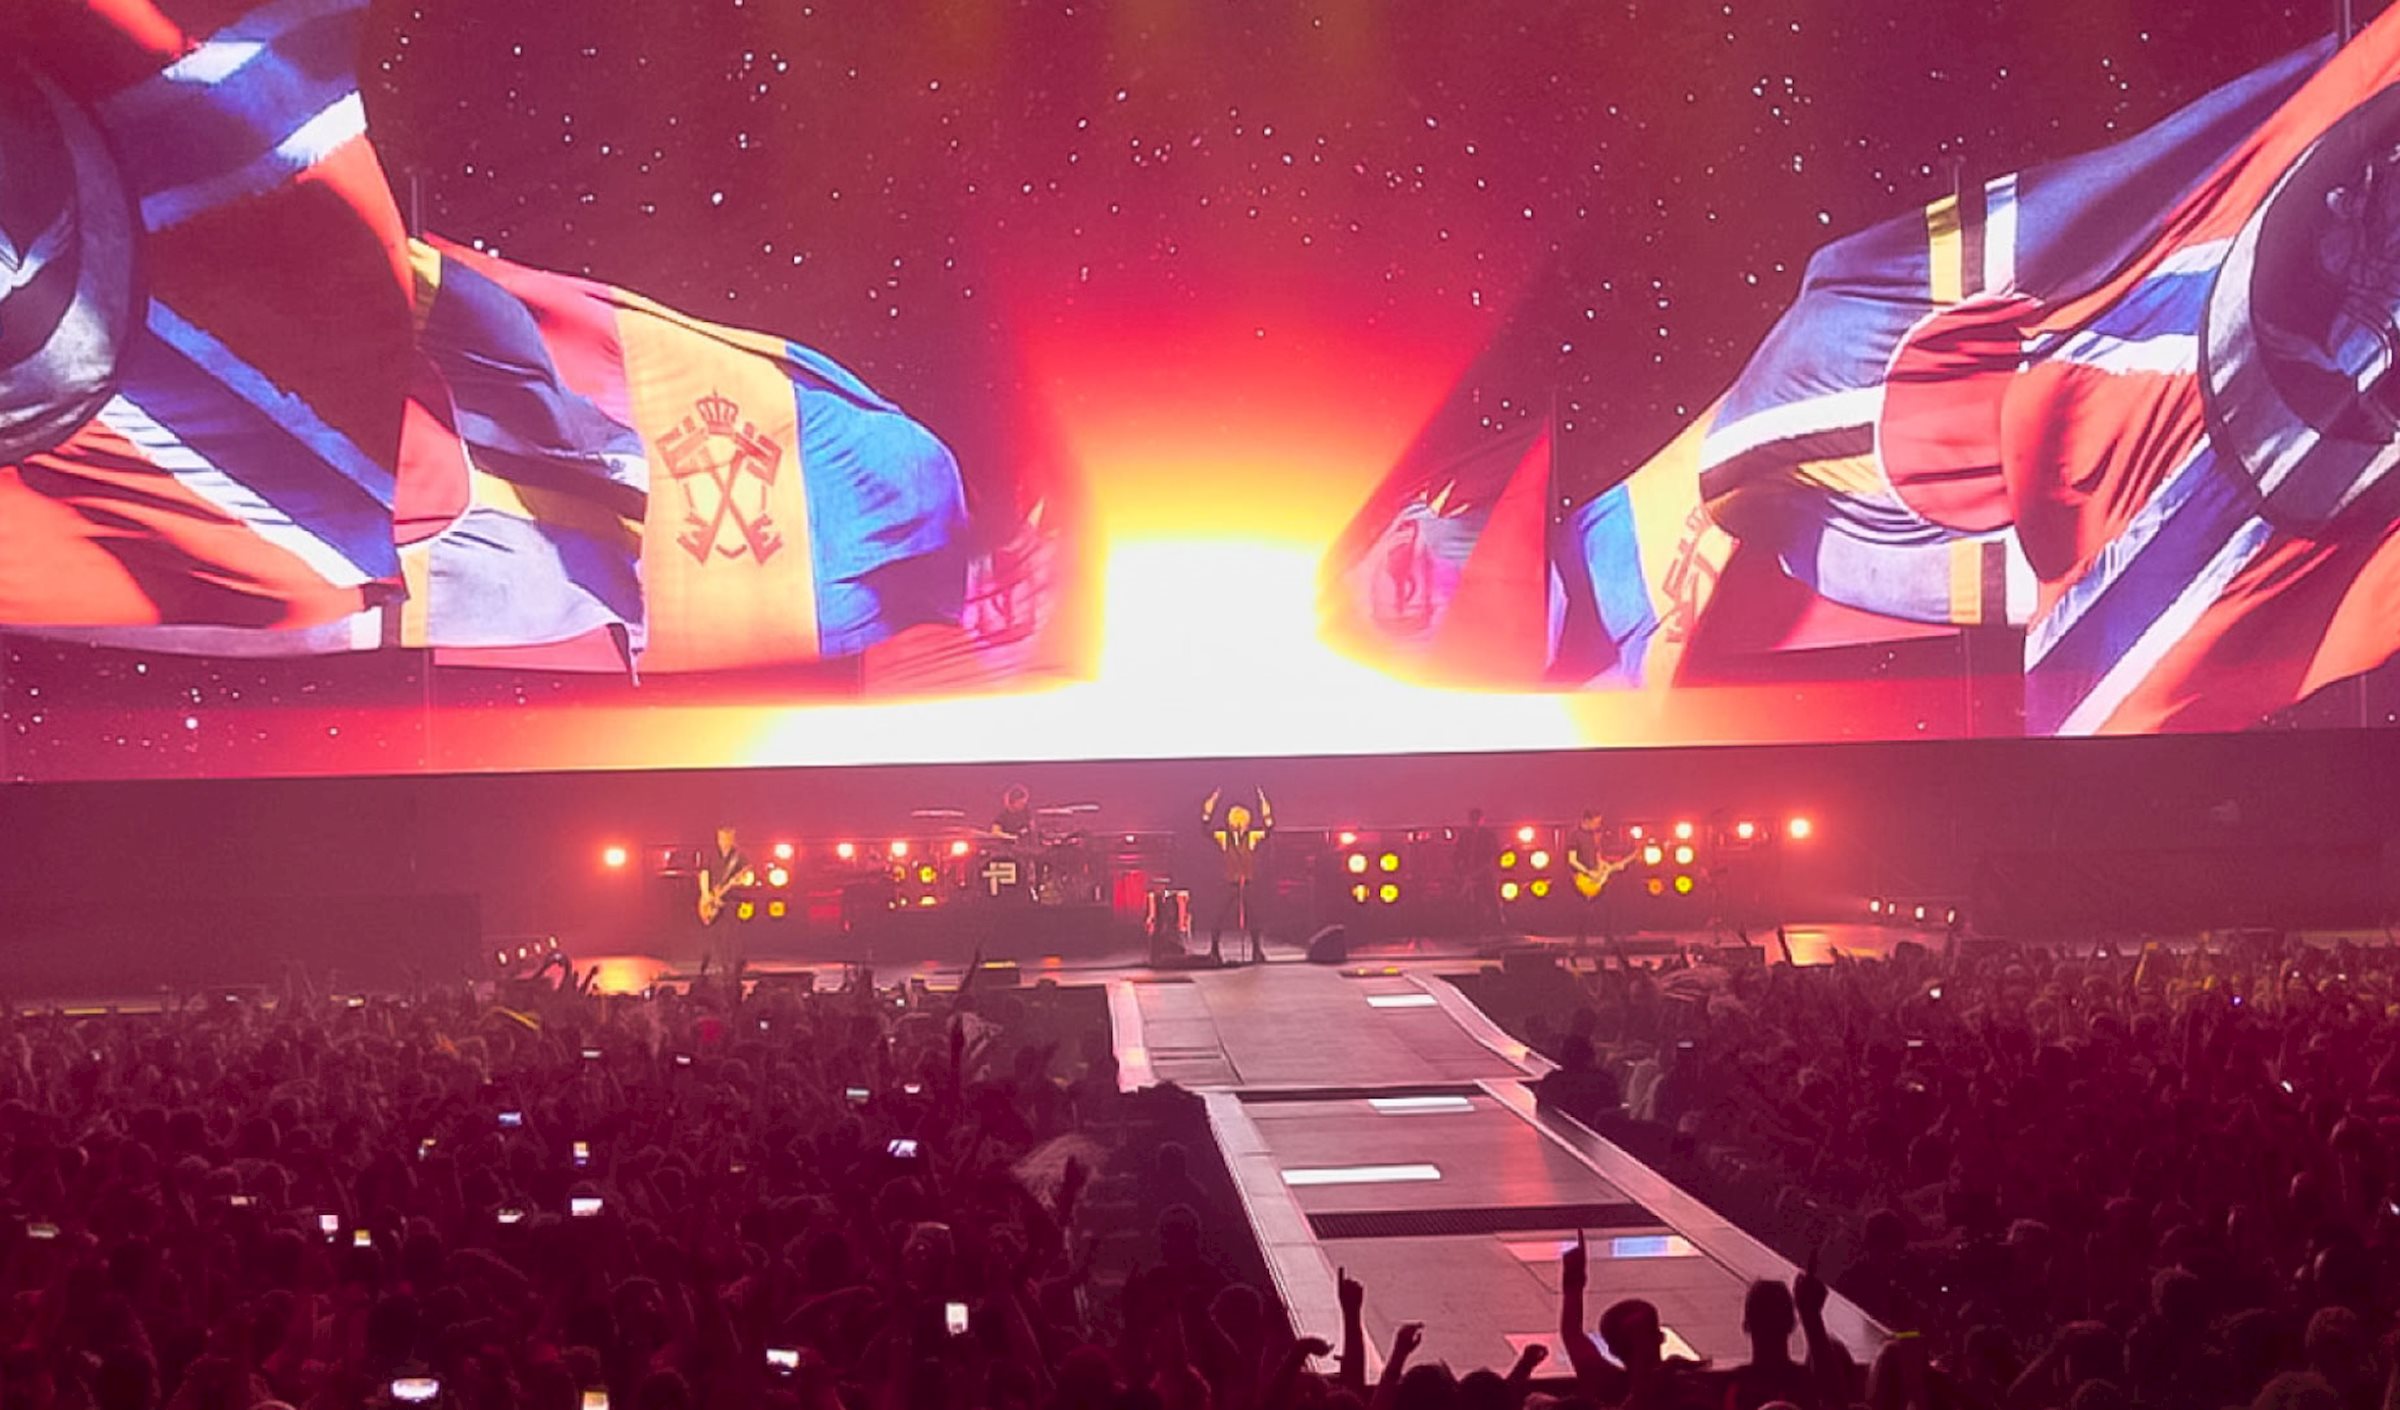 Voor de slotshow van Indochine's "13 Tour" kwamen meer dan 50 000 fans naar Lille om de meeslepende show te beleven die werd ondersteund door PRG als technische dienstverlener.